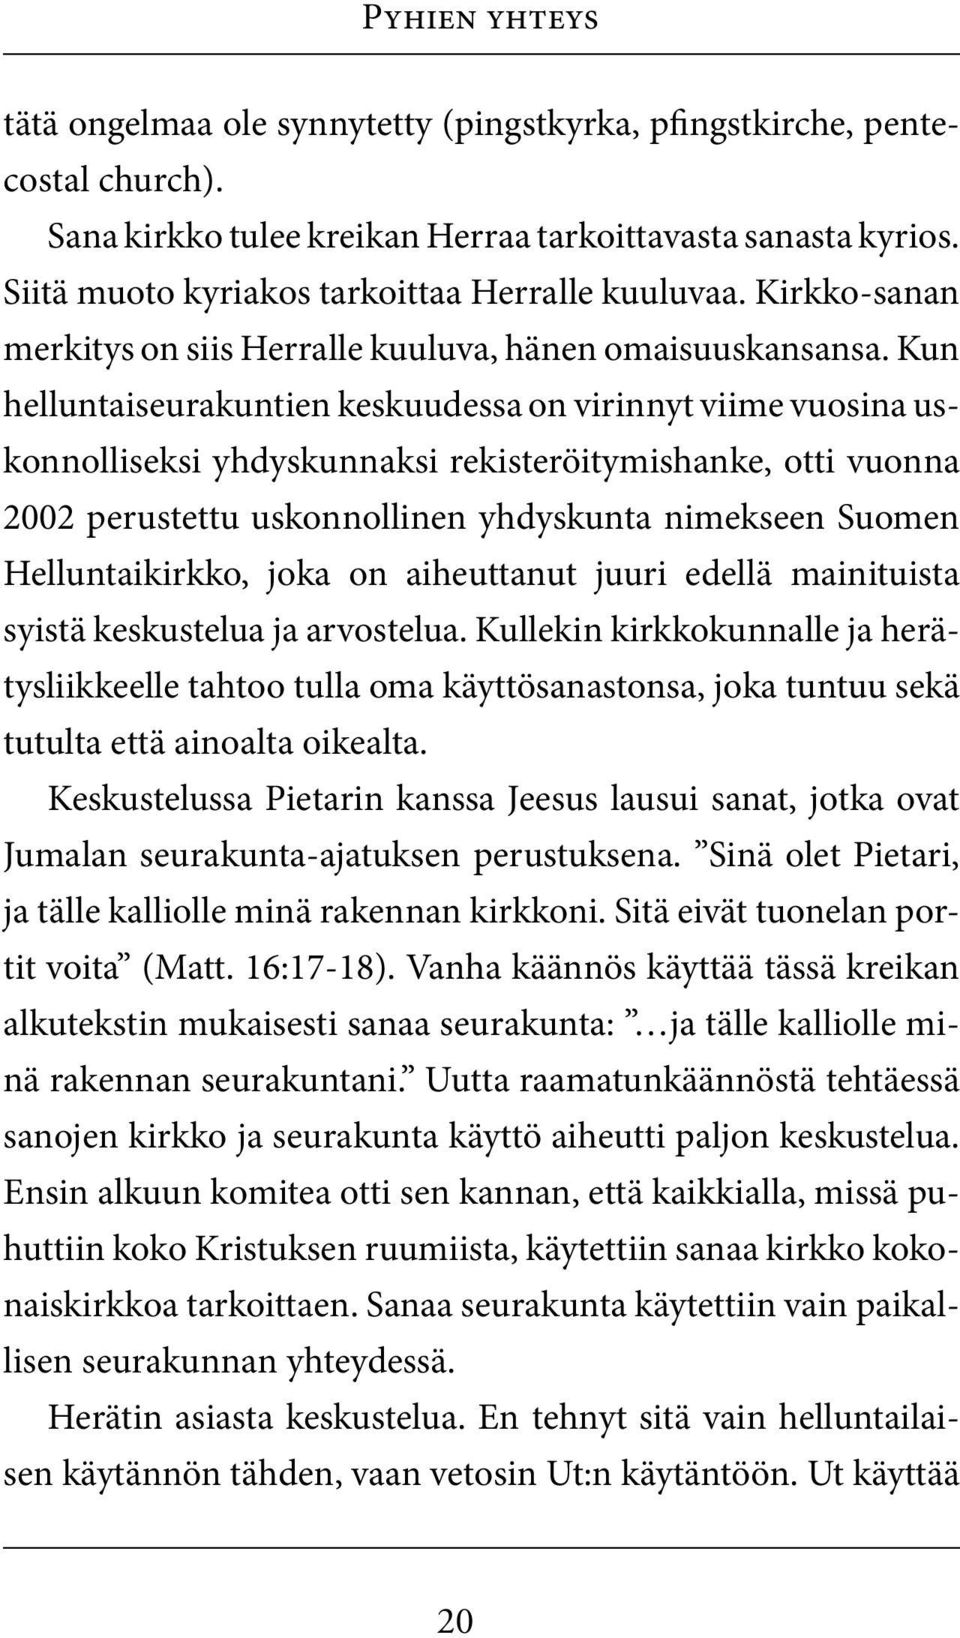 Kun helluntaiseurakuntien keskuudessa on virinnyt viime vuosina uskonnolliseksi yhdyskunnaksi rekisteröitymishanke, otti vuonna 2002 perustettu uskonnollinen yhdyskunta nimekseen Suomen